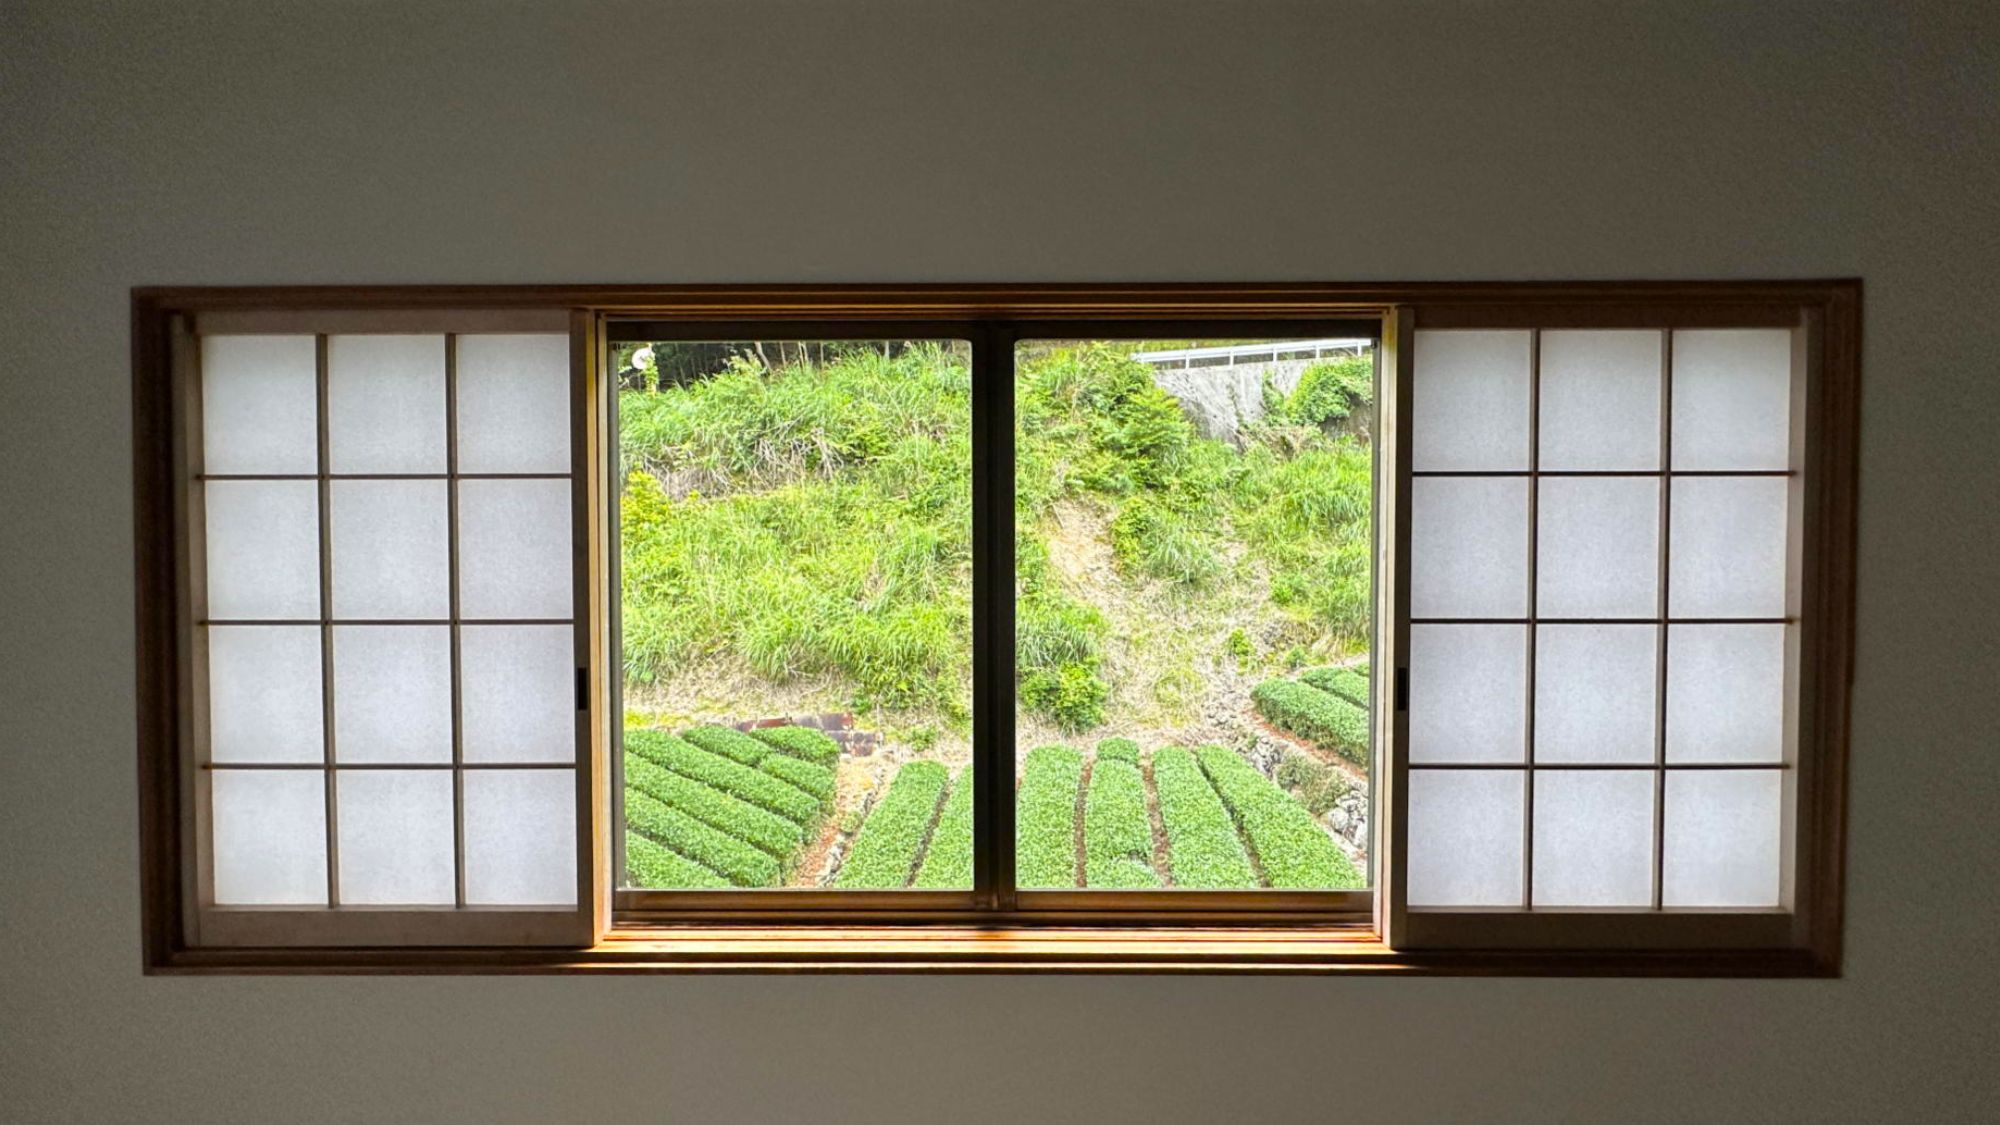 【窓からの景色】窓からお茶畑、深緑の山々が見渡すことができます。